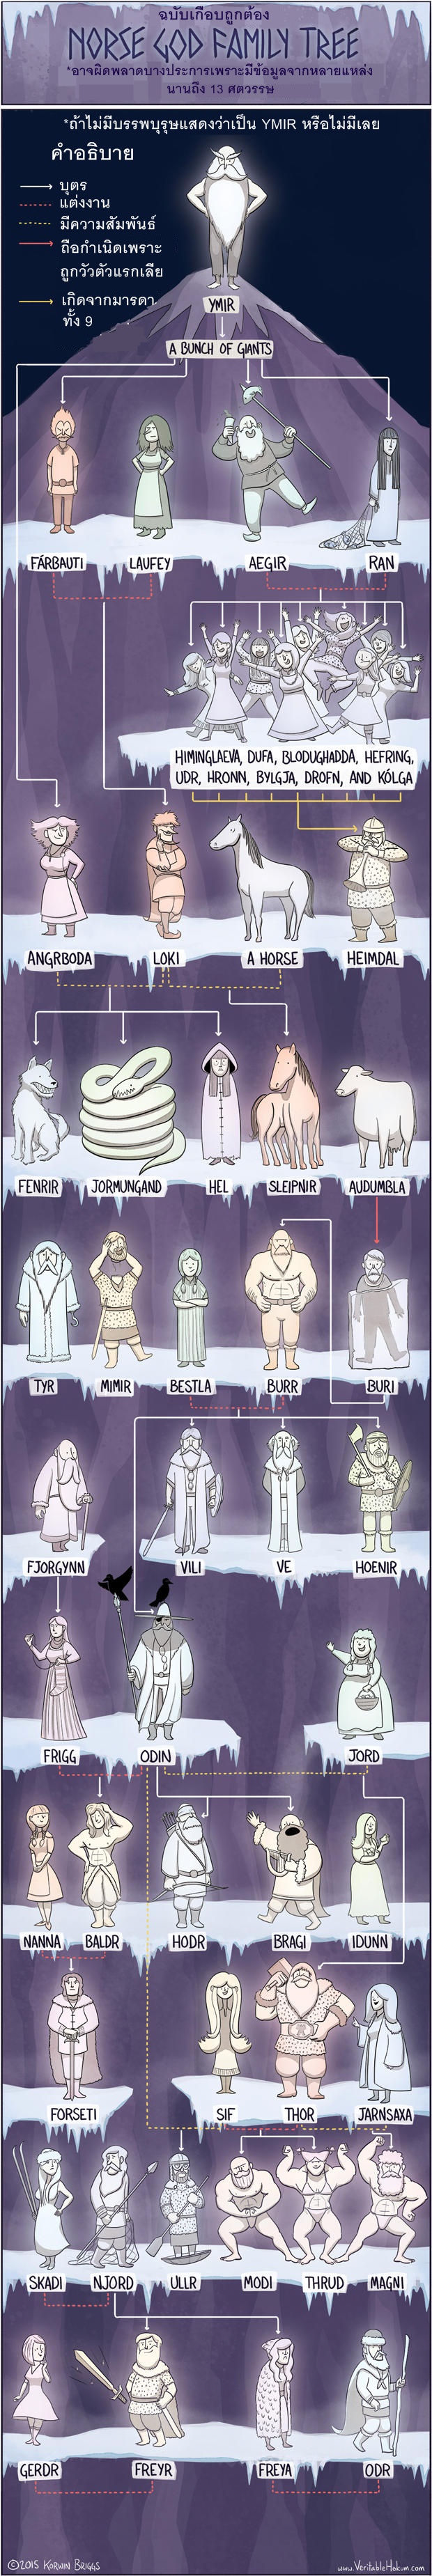 god-mythology-family-trees03.jpg